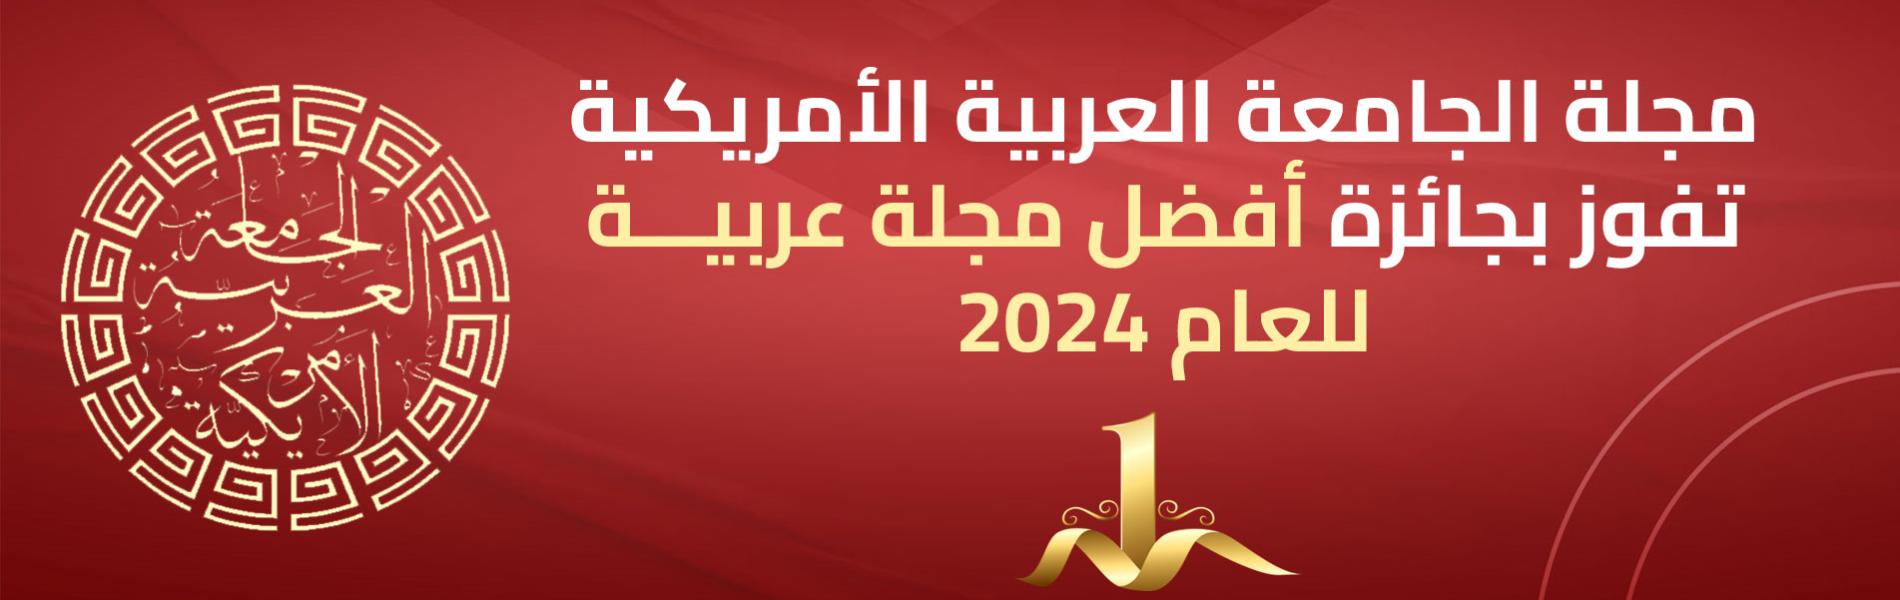 مجلة الجامعة العربية الأمريكية تفوز بجائزة أفضل مجلة عربية للعام 2024